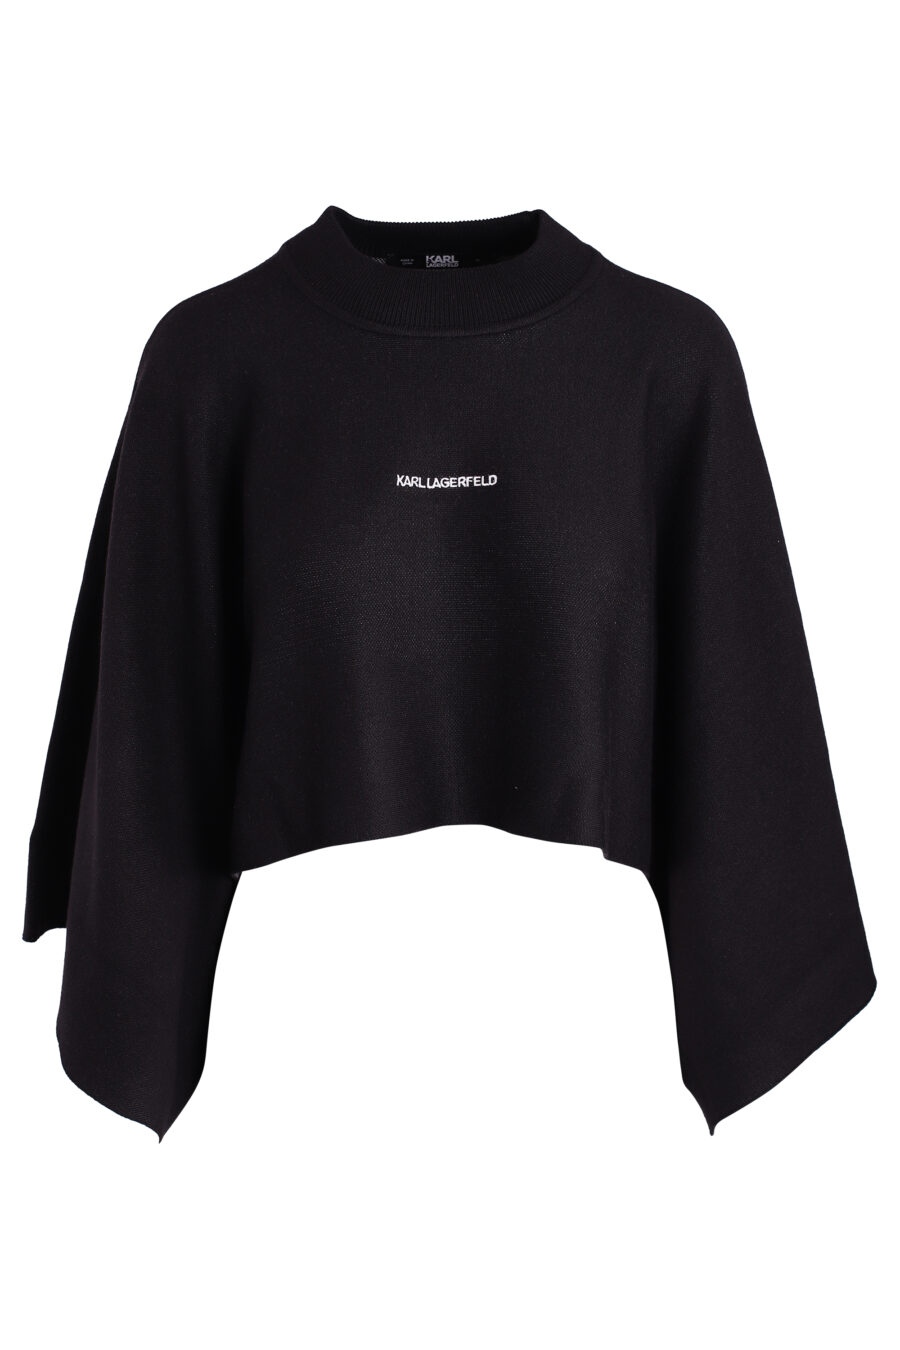 Schwarzer Pullover mit weiten Ärmeln und kleinem Logo - IMG 3366